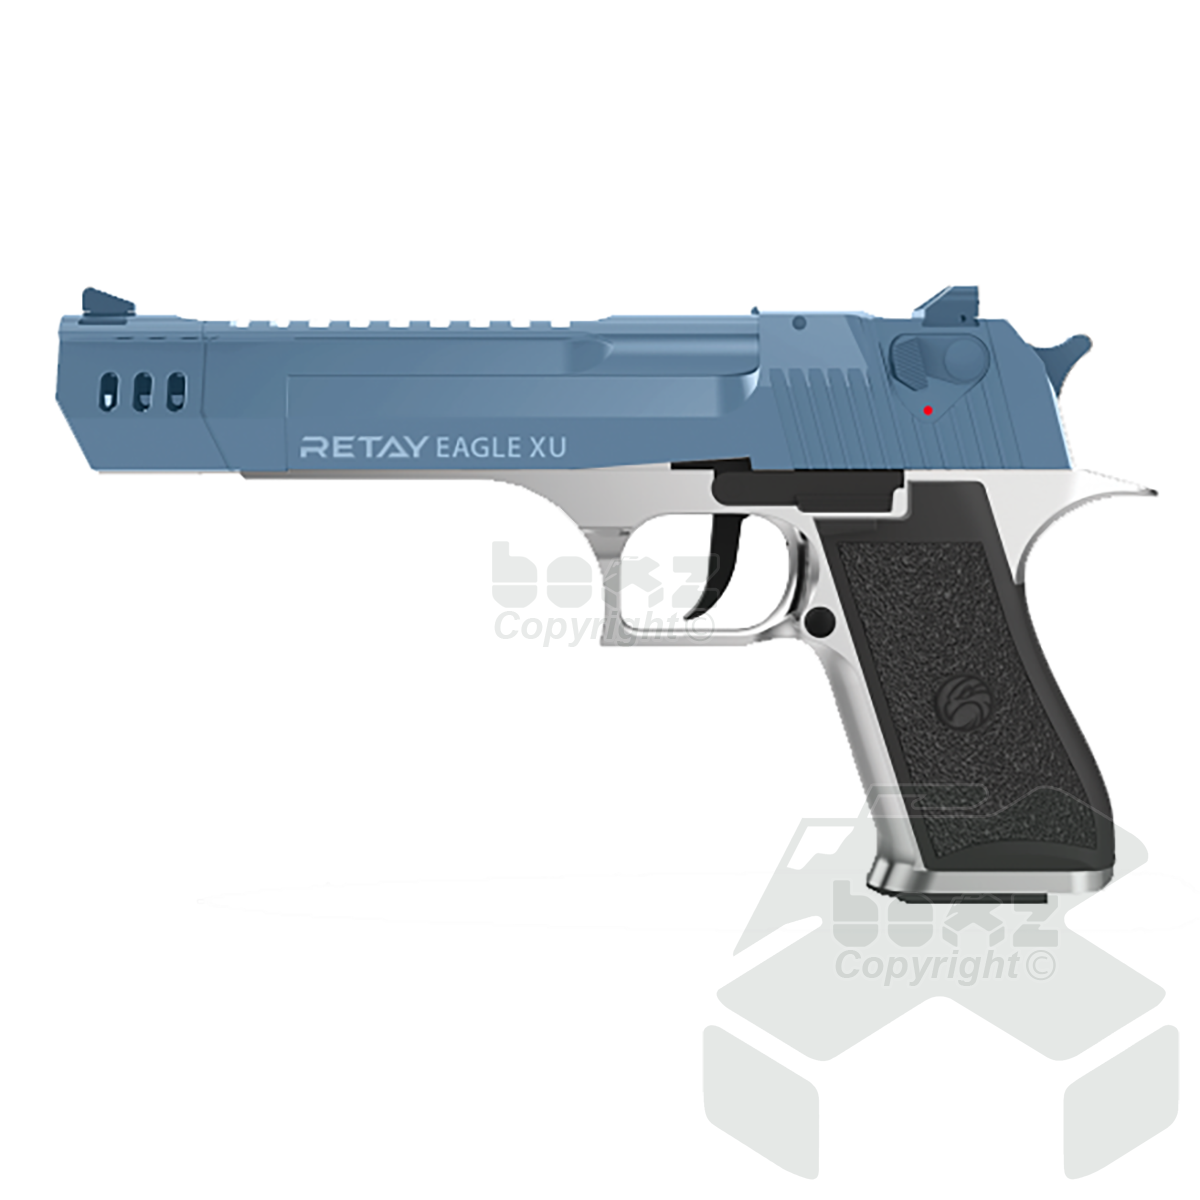 Retay EagleXU Blank Firing Pistol - 9mm - Nickel